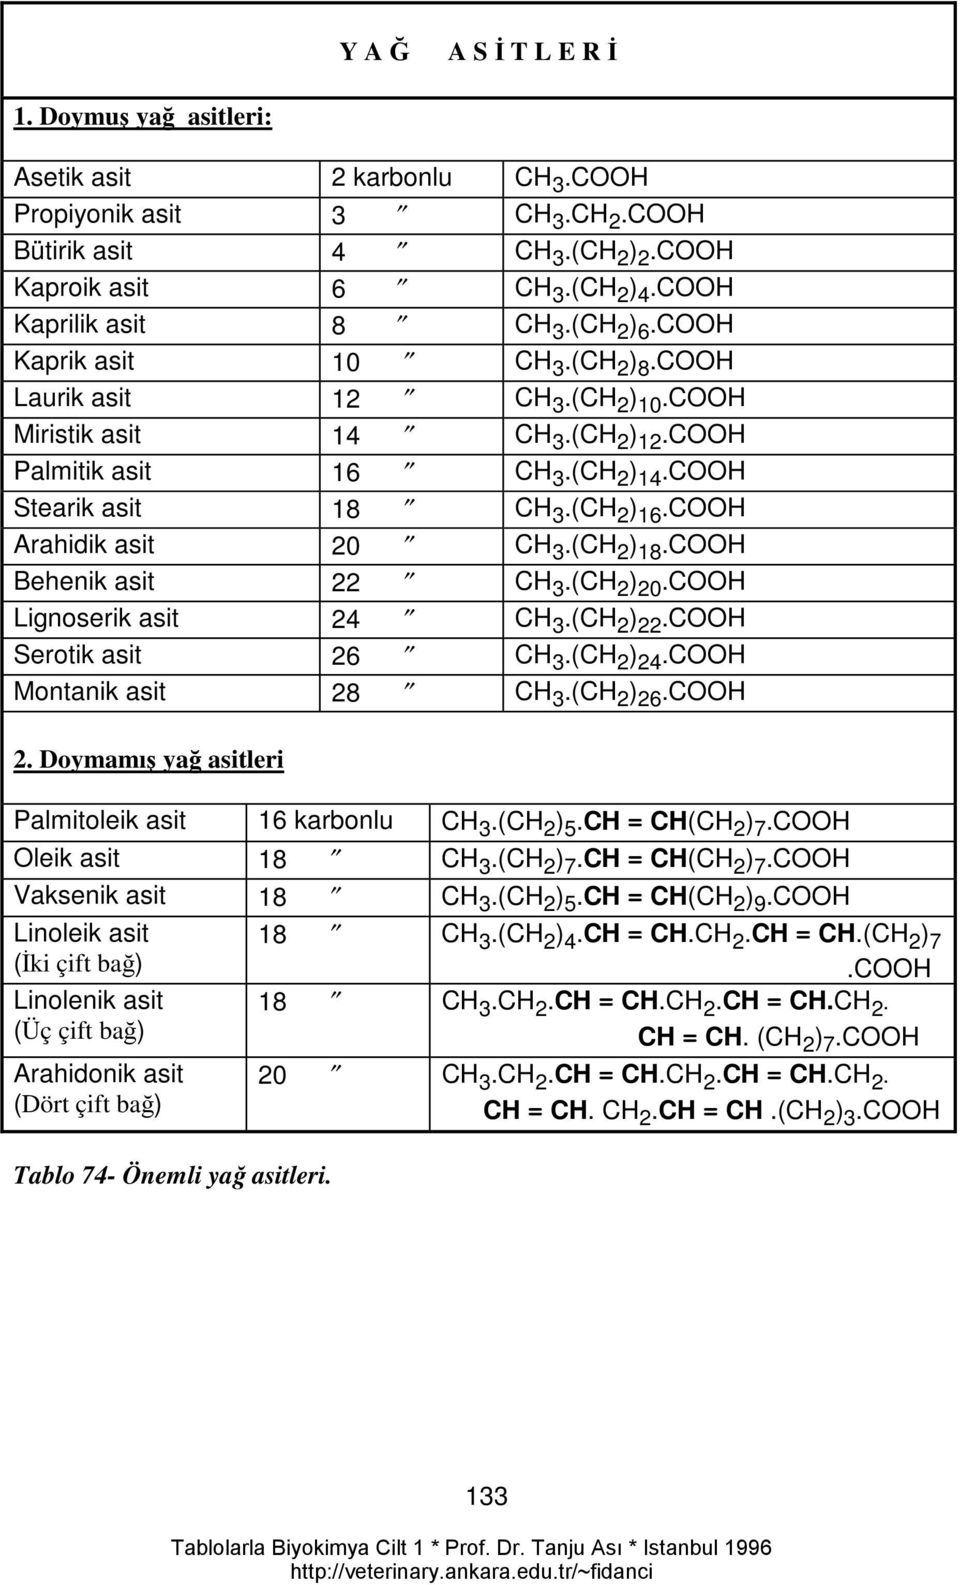 COOH Stearik asit 18 CH 3.(CH 2 ) 16.COOH Arahidik asit 20 CH 3.(CH 2 ) 18.COOH Behenik asit 22 CH 3.(CH 2 ) 20.COOH Lignoserik asit 24 CH 3.(CH 2 ) 22.COOH Serotik asit 26 CH 3.(CH 2 ) 24.